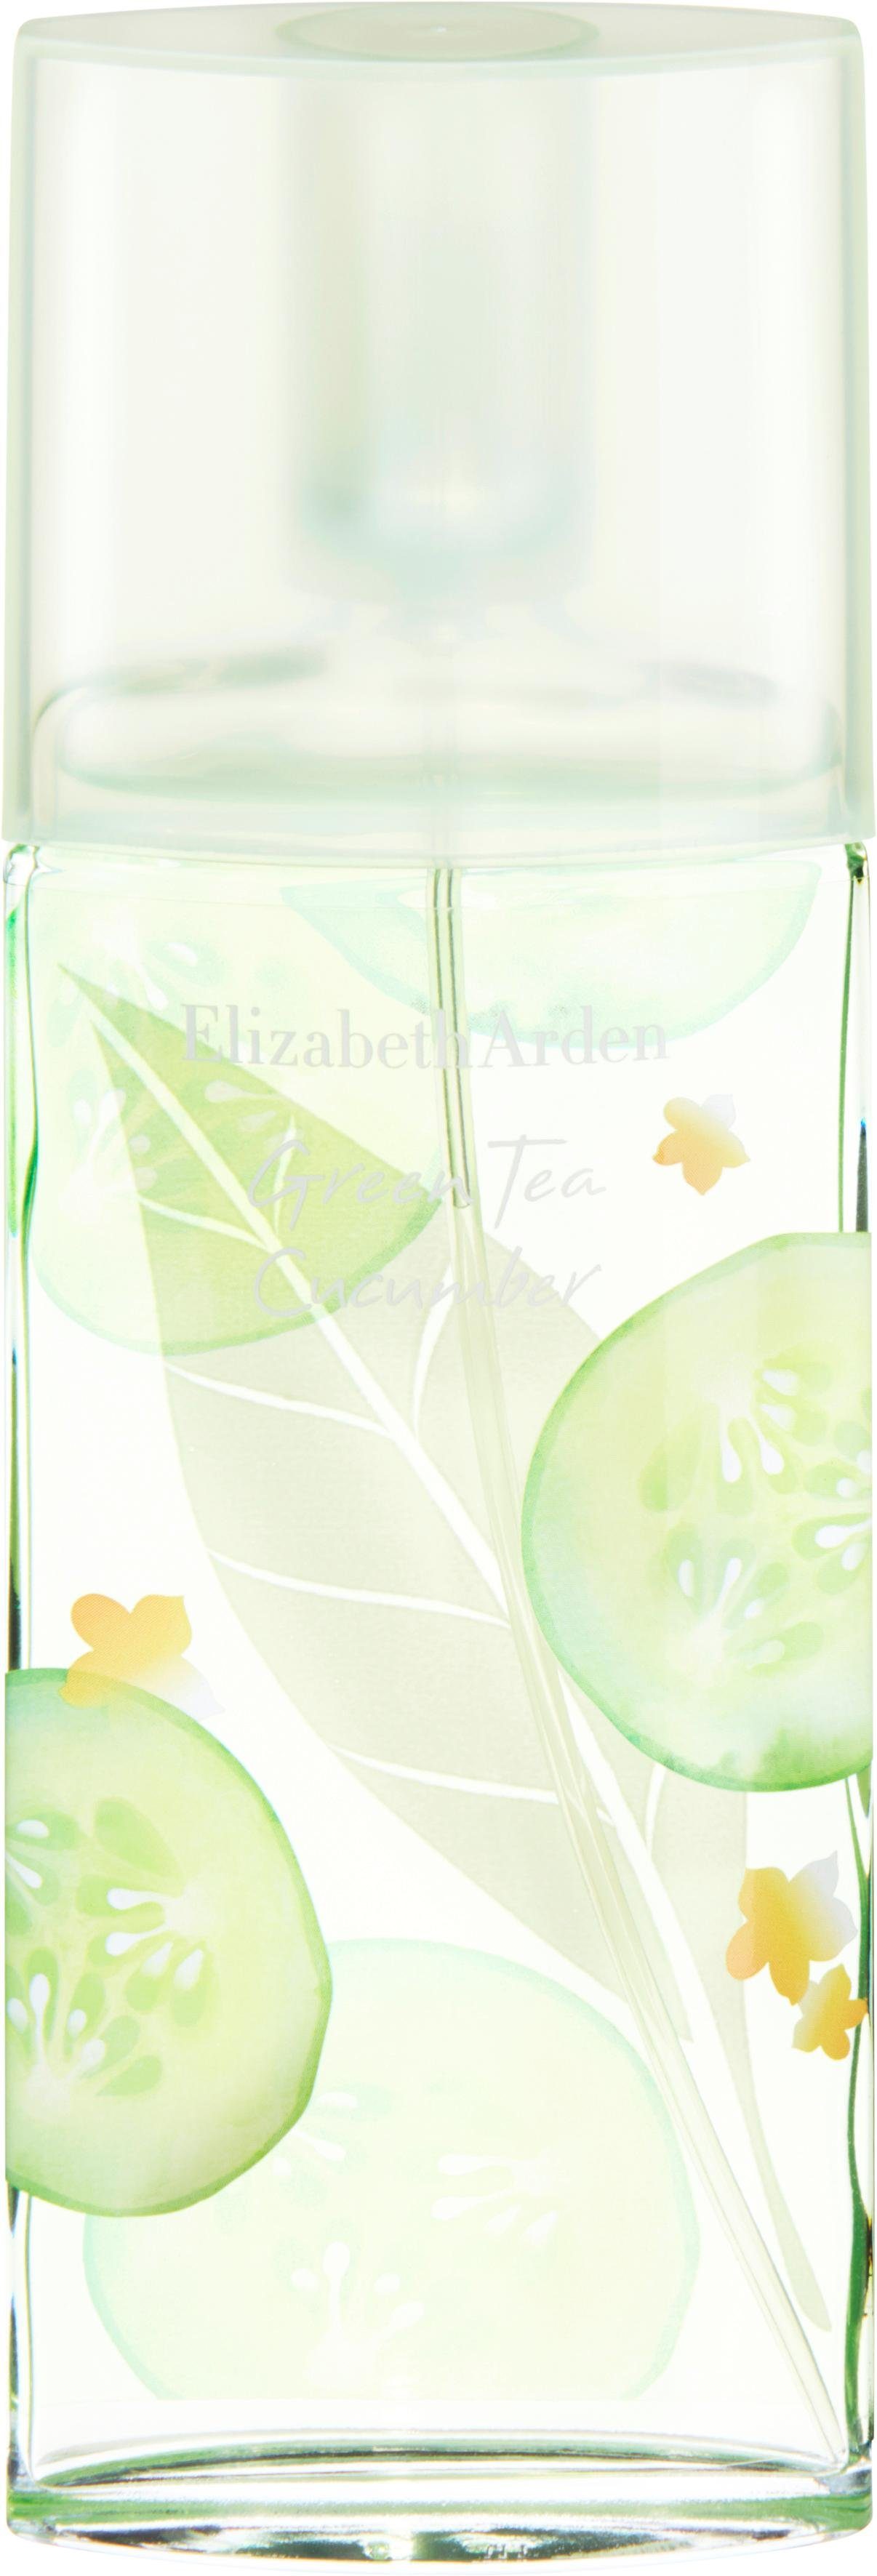 Elizabeth Arden de Green Tea Eau Toilette Cucumber